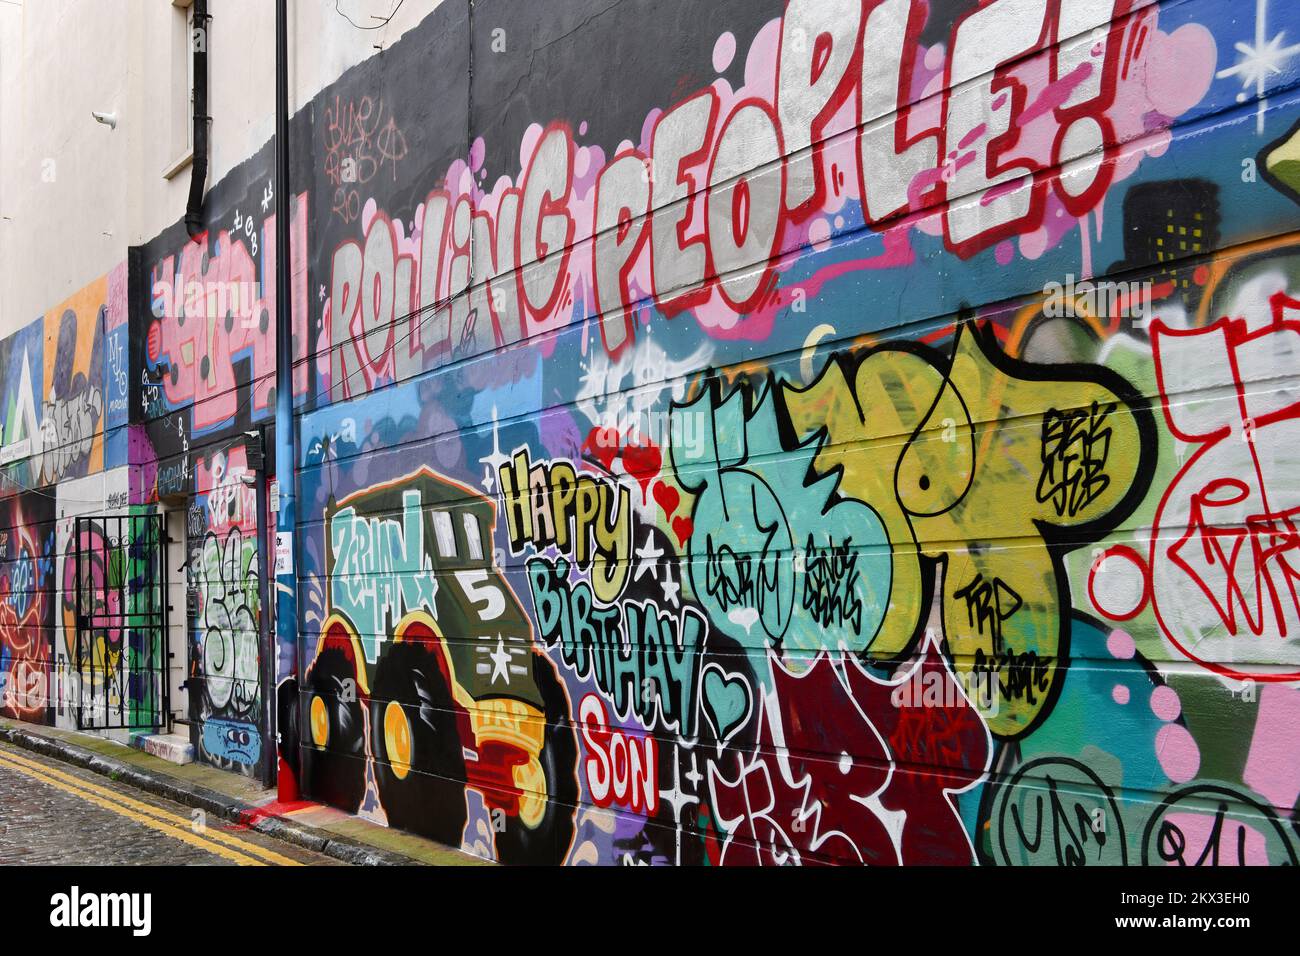 Un mur dans la rue Grimsby, Shoreditch couvert de graffitis comprenant un camion et les mots roulant personnes et heureux anniversaire de fils Banque D'Images